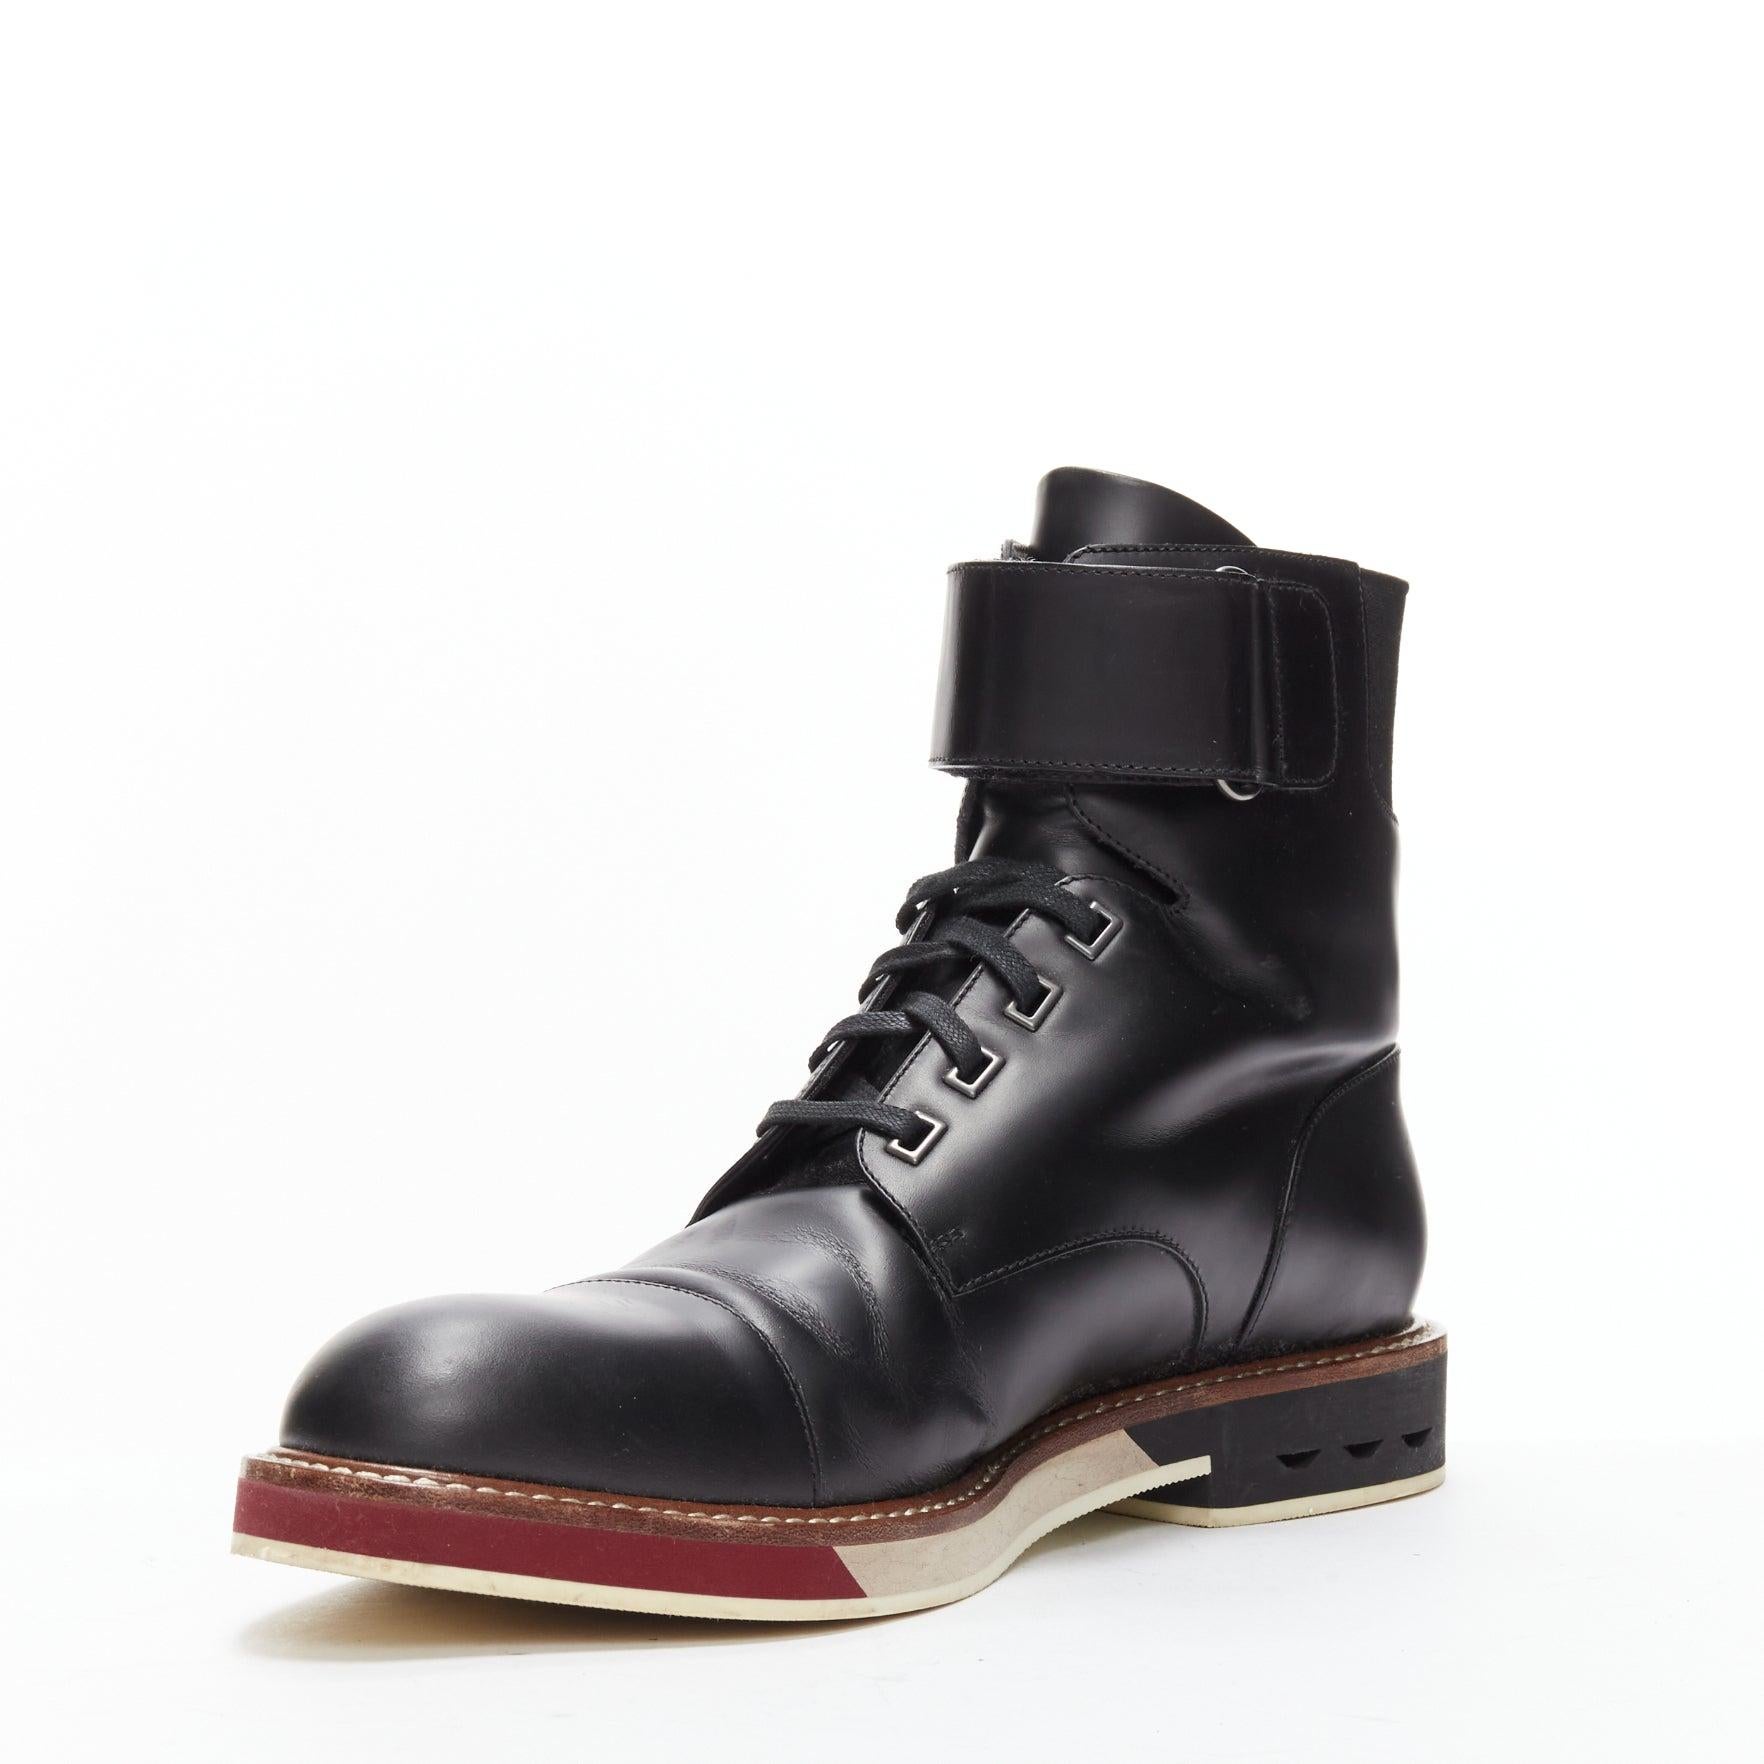 Men's LOUIS VUITTON Sword black leather LV logo hiking lace up boots UK7.5 EU41.5 For Sale